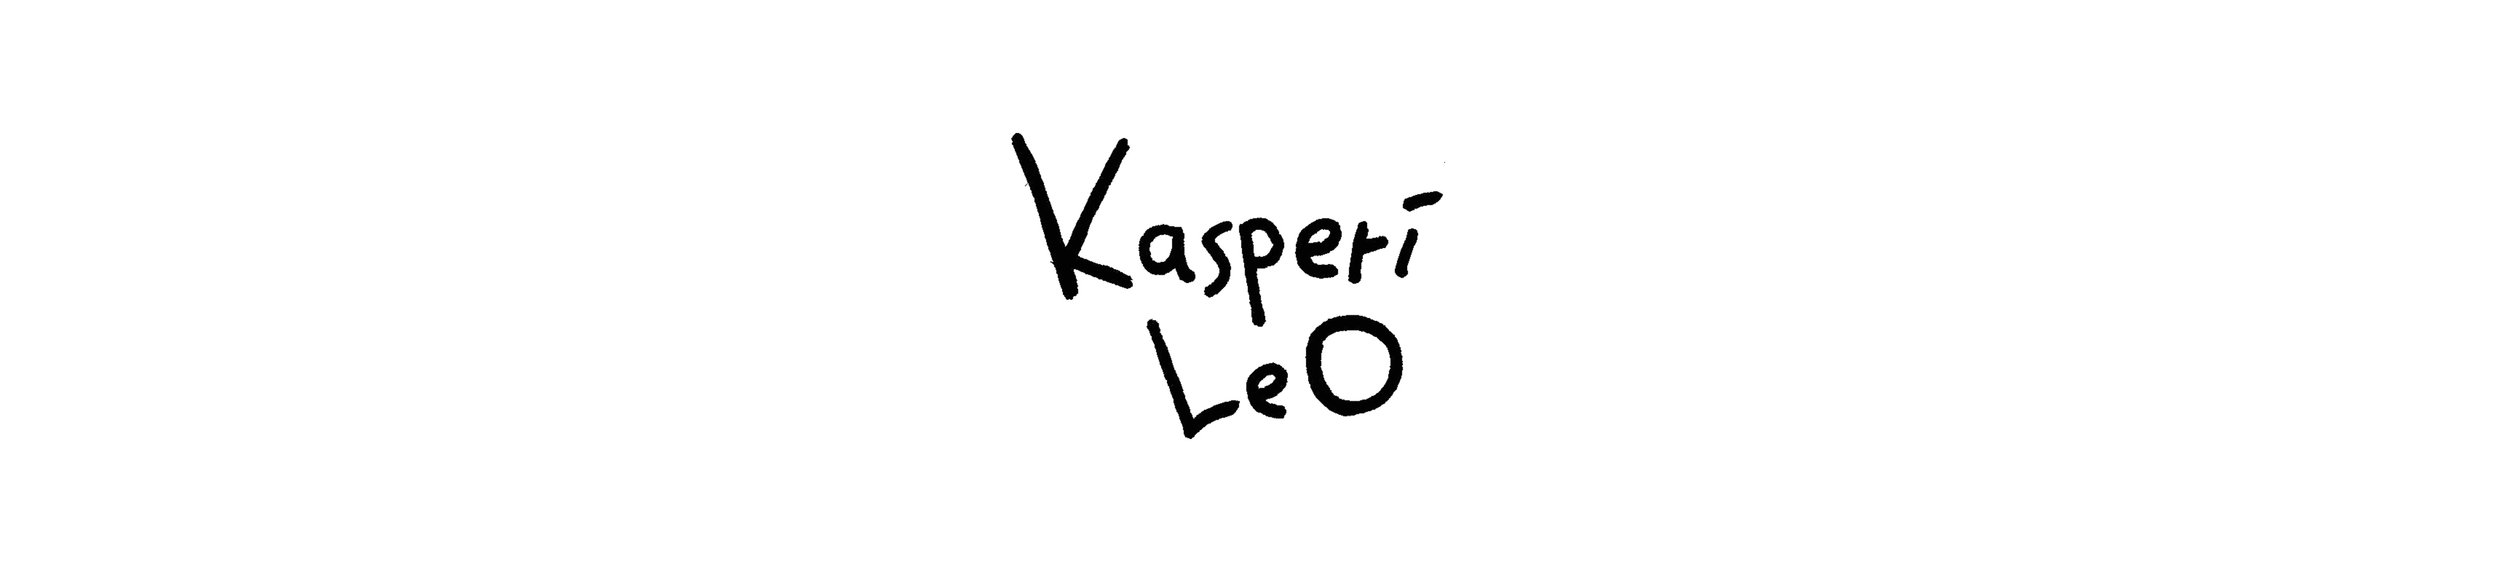 Kasperimonile logo.jpg